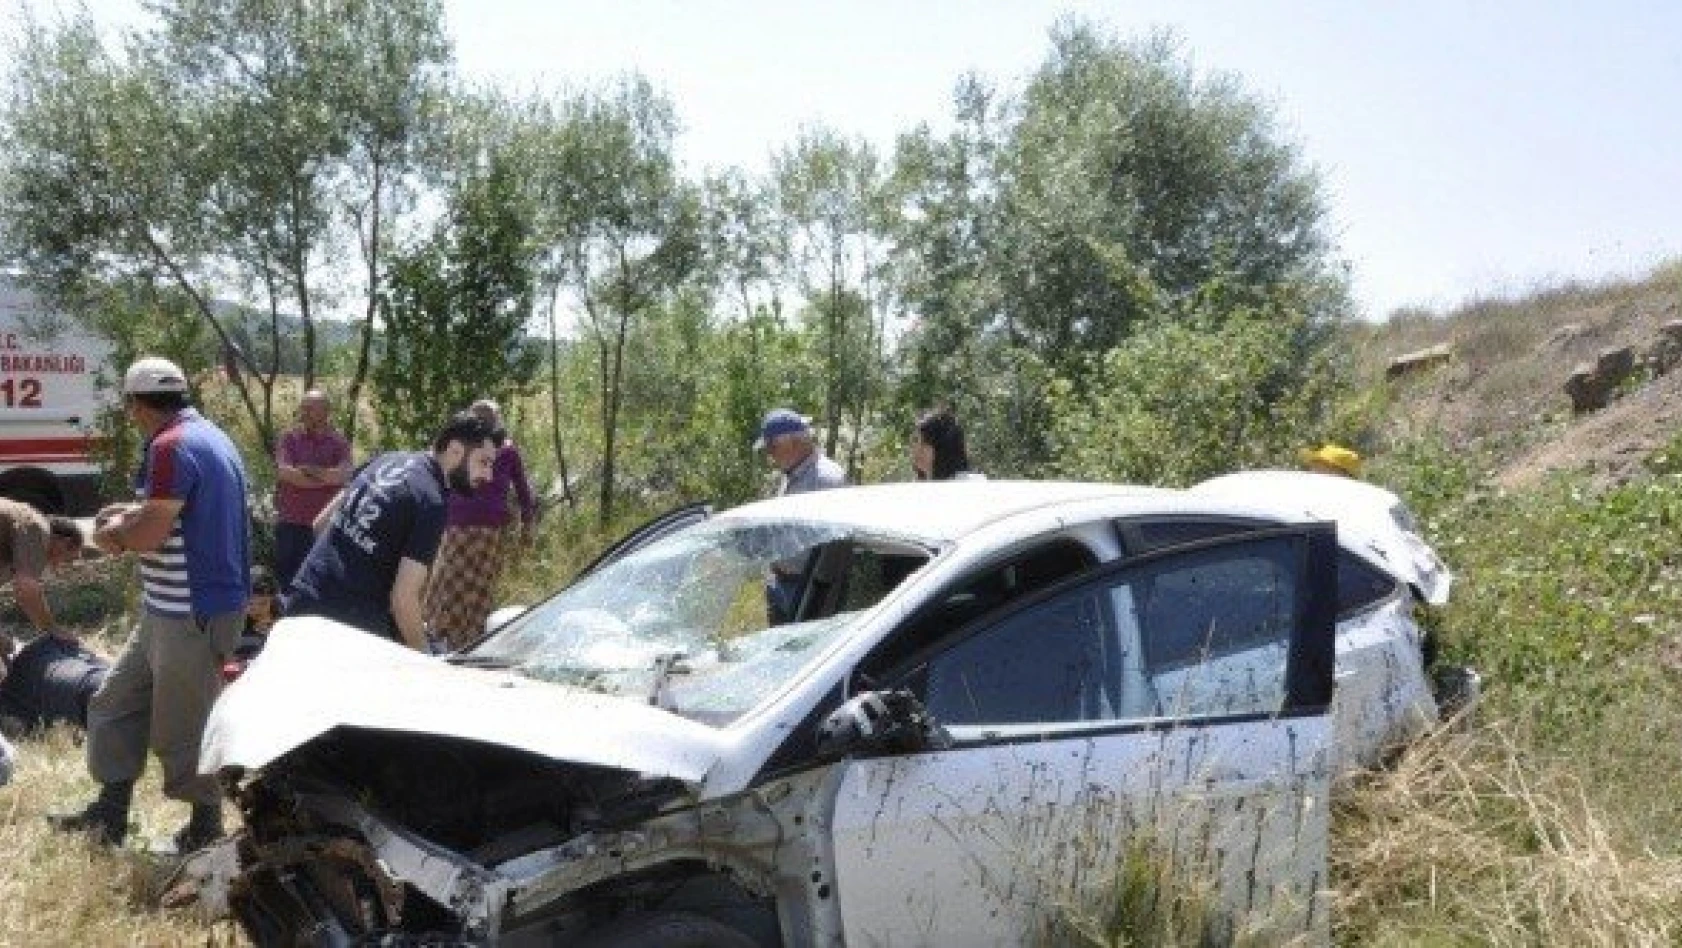 Kastamonu'da otomobil tarlaya devrildi: 5 yaralı